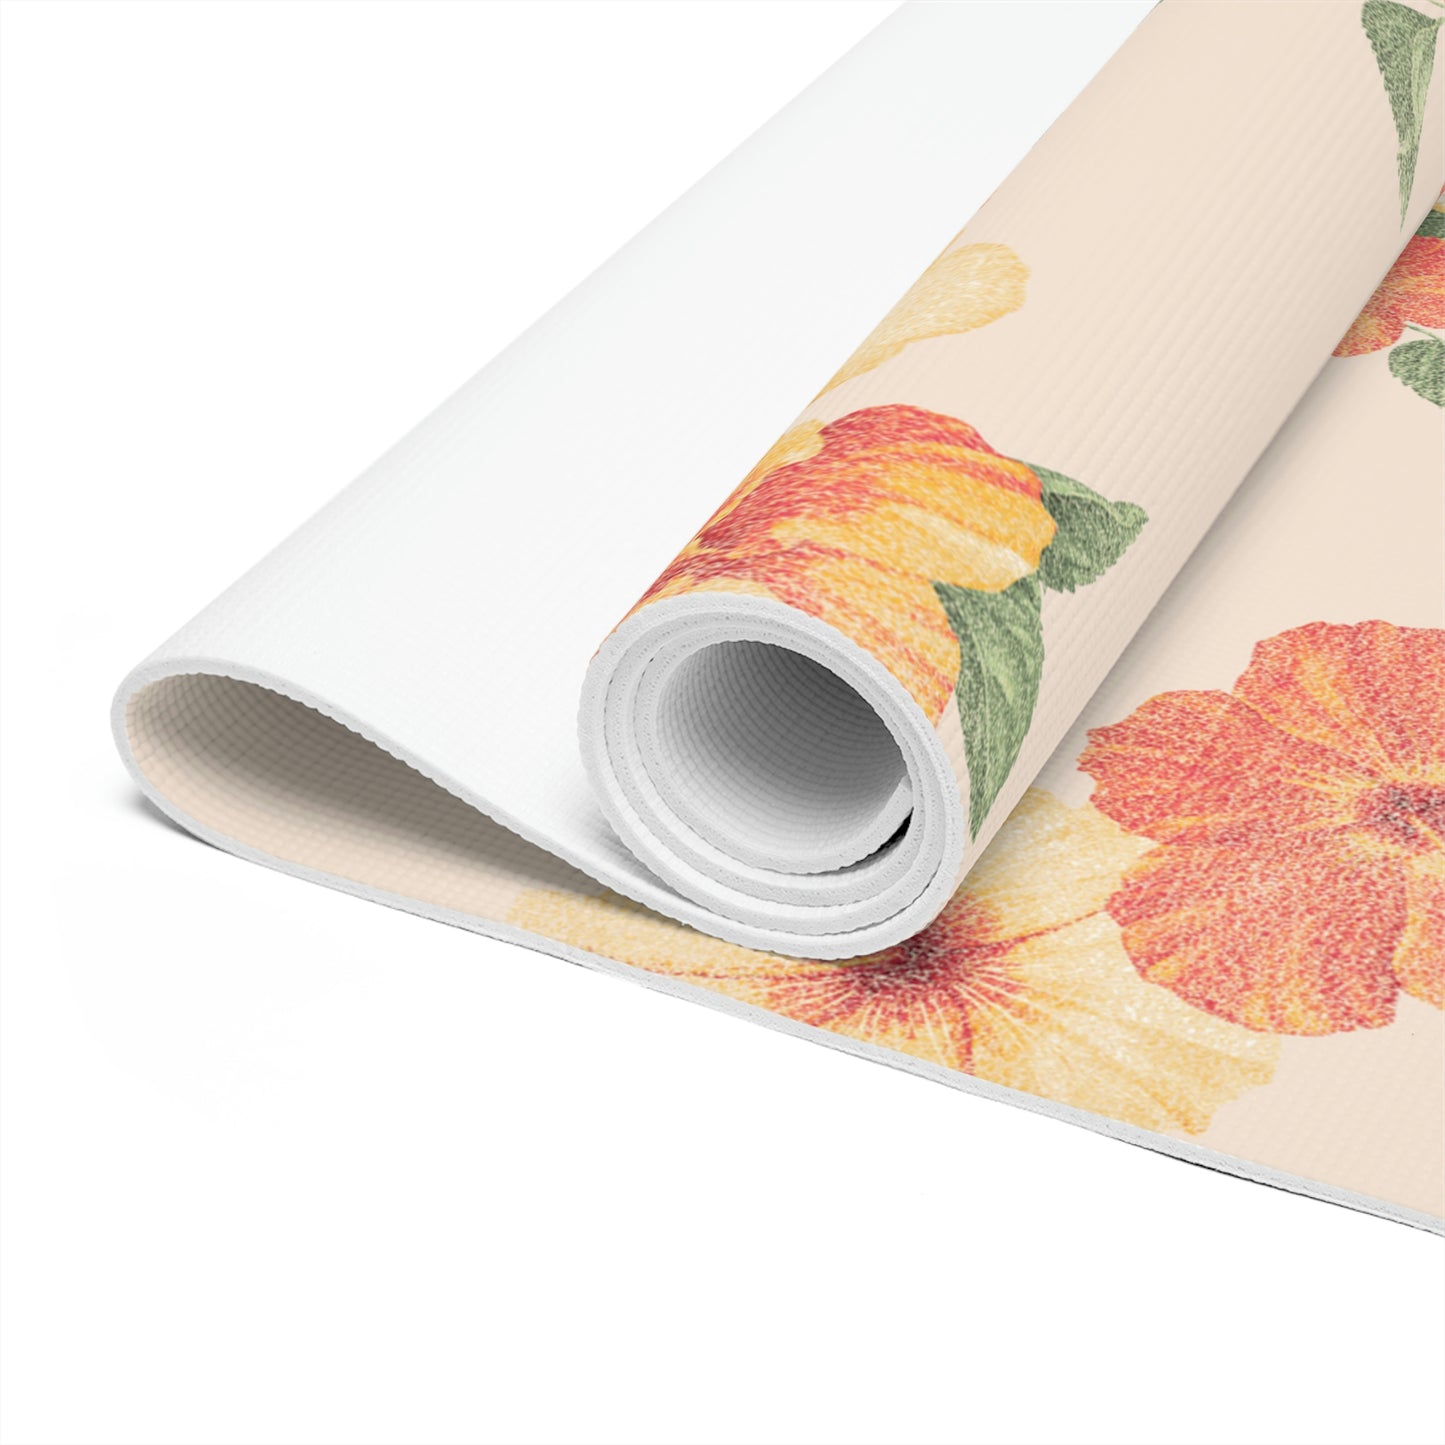 Hibiscus Printed Foam Yoga Mat